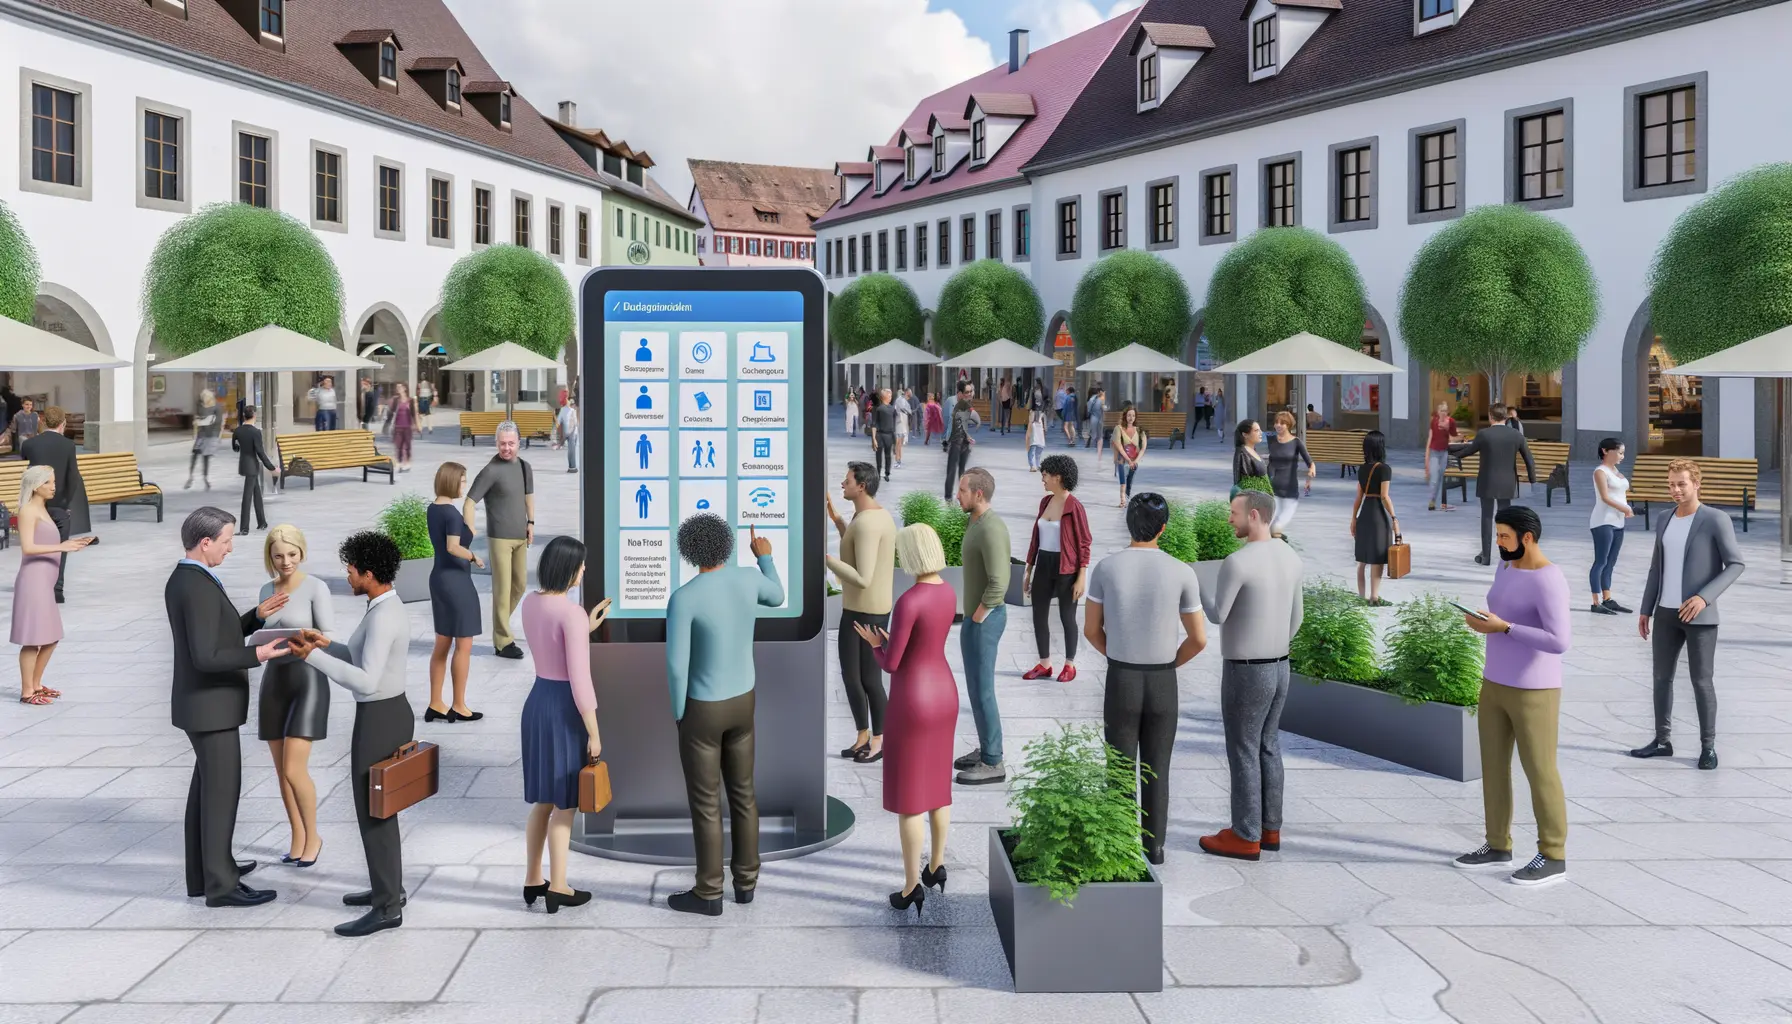 Belebte Platzszene in Kreuzlingen mit Tablet-Nutzung